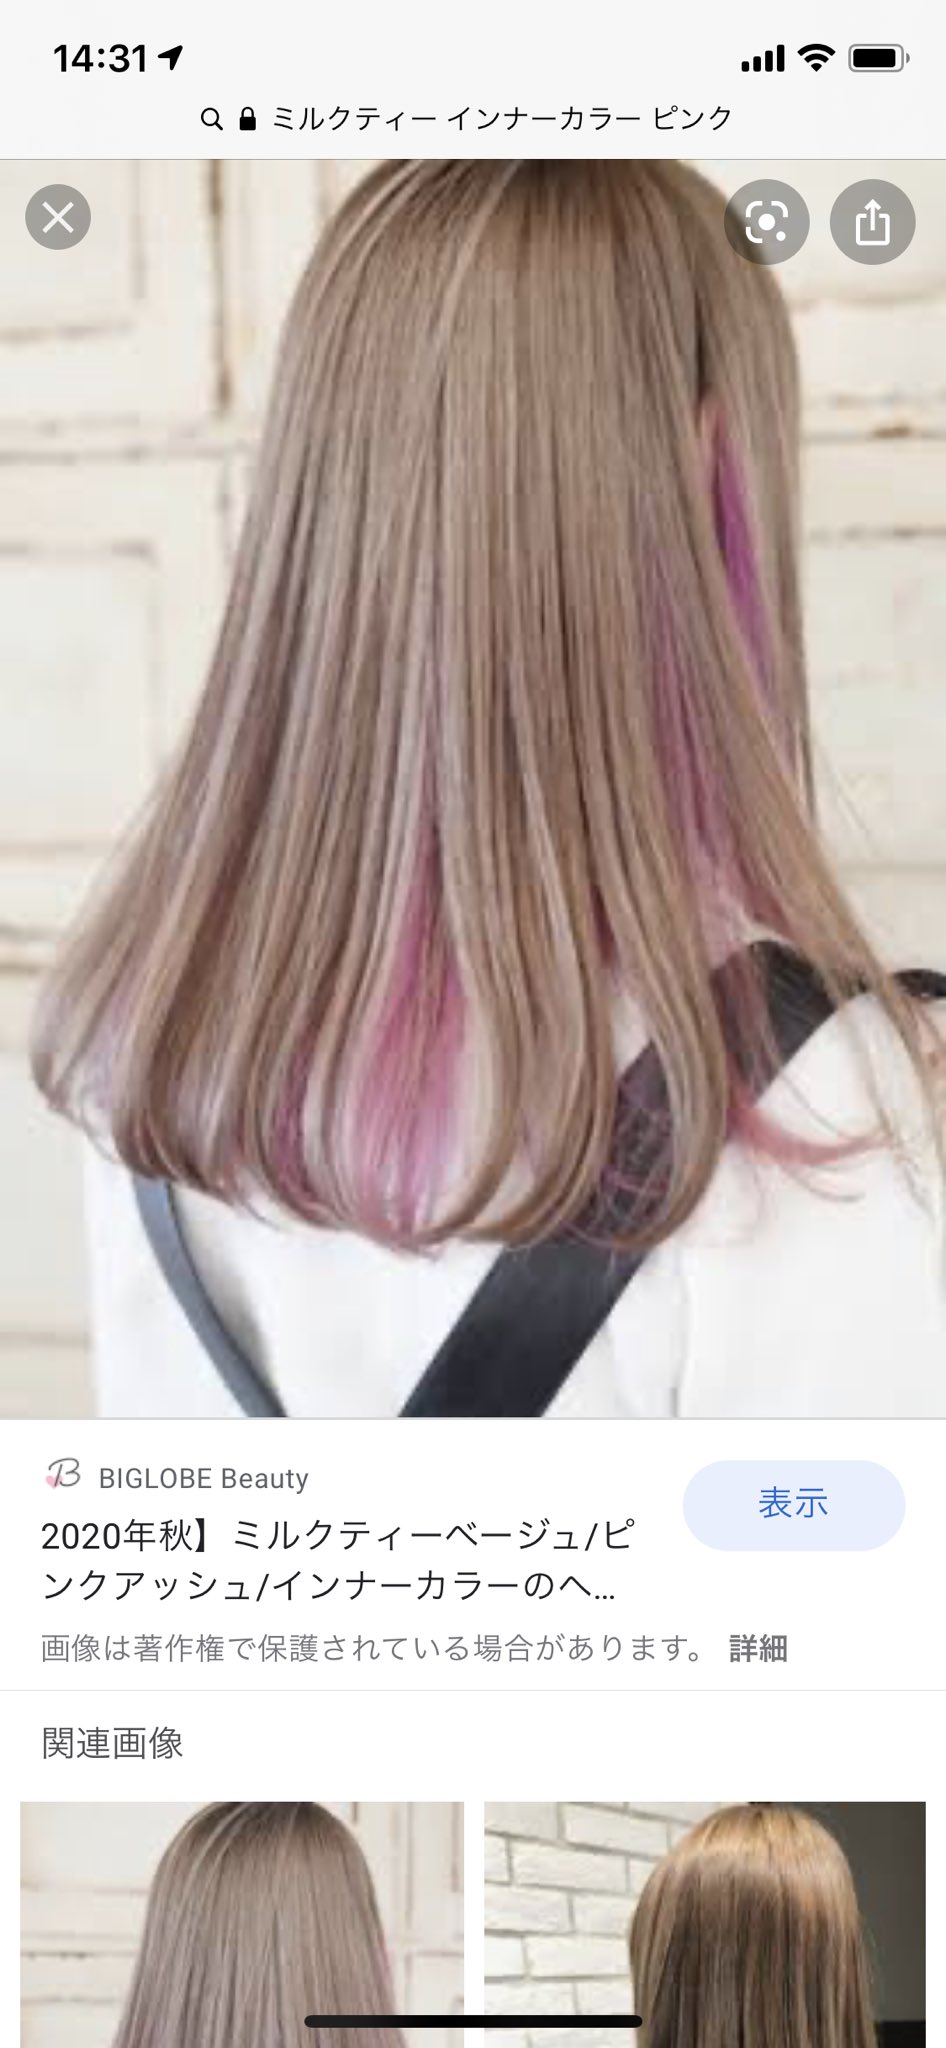 めろみ 次したい髪色一年前のピンクグラデじゃなくてインナーカラーにしようと思ってるんだけど明るめ ピンクにするか暗め ピンク にするか迷う 黒のが好評なのよね T Co 9jmci3qjzo Twitter